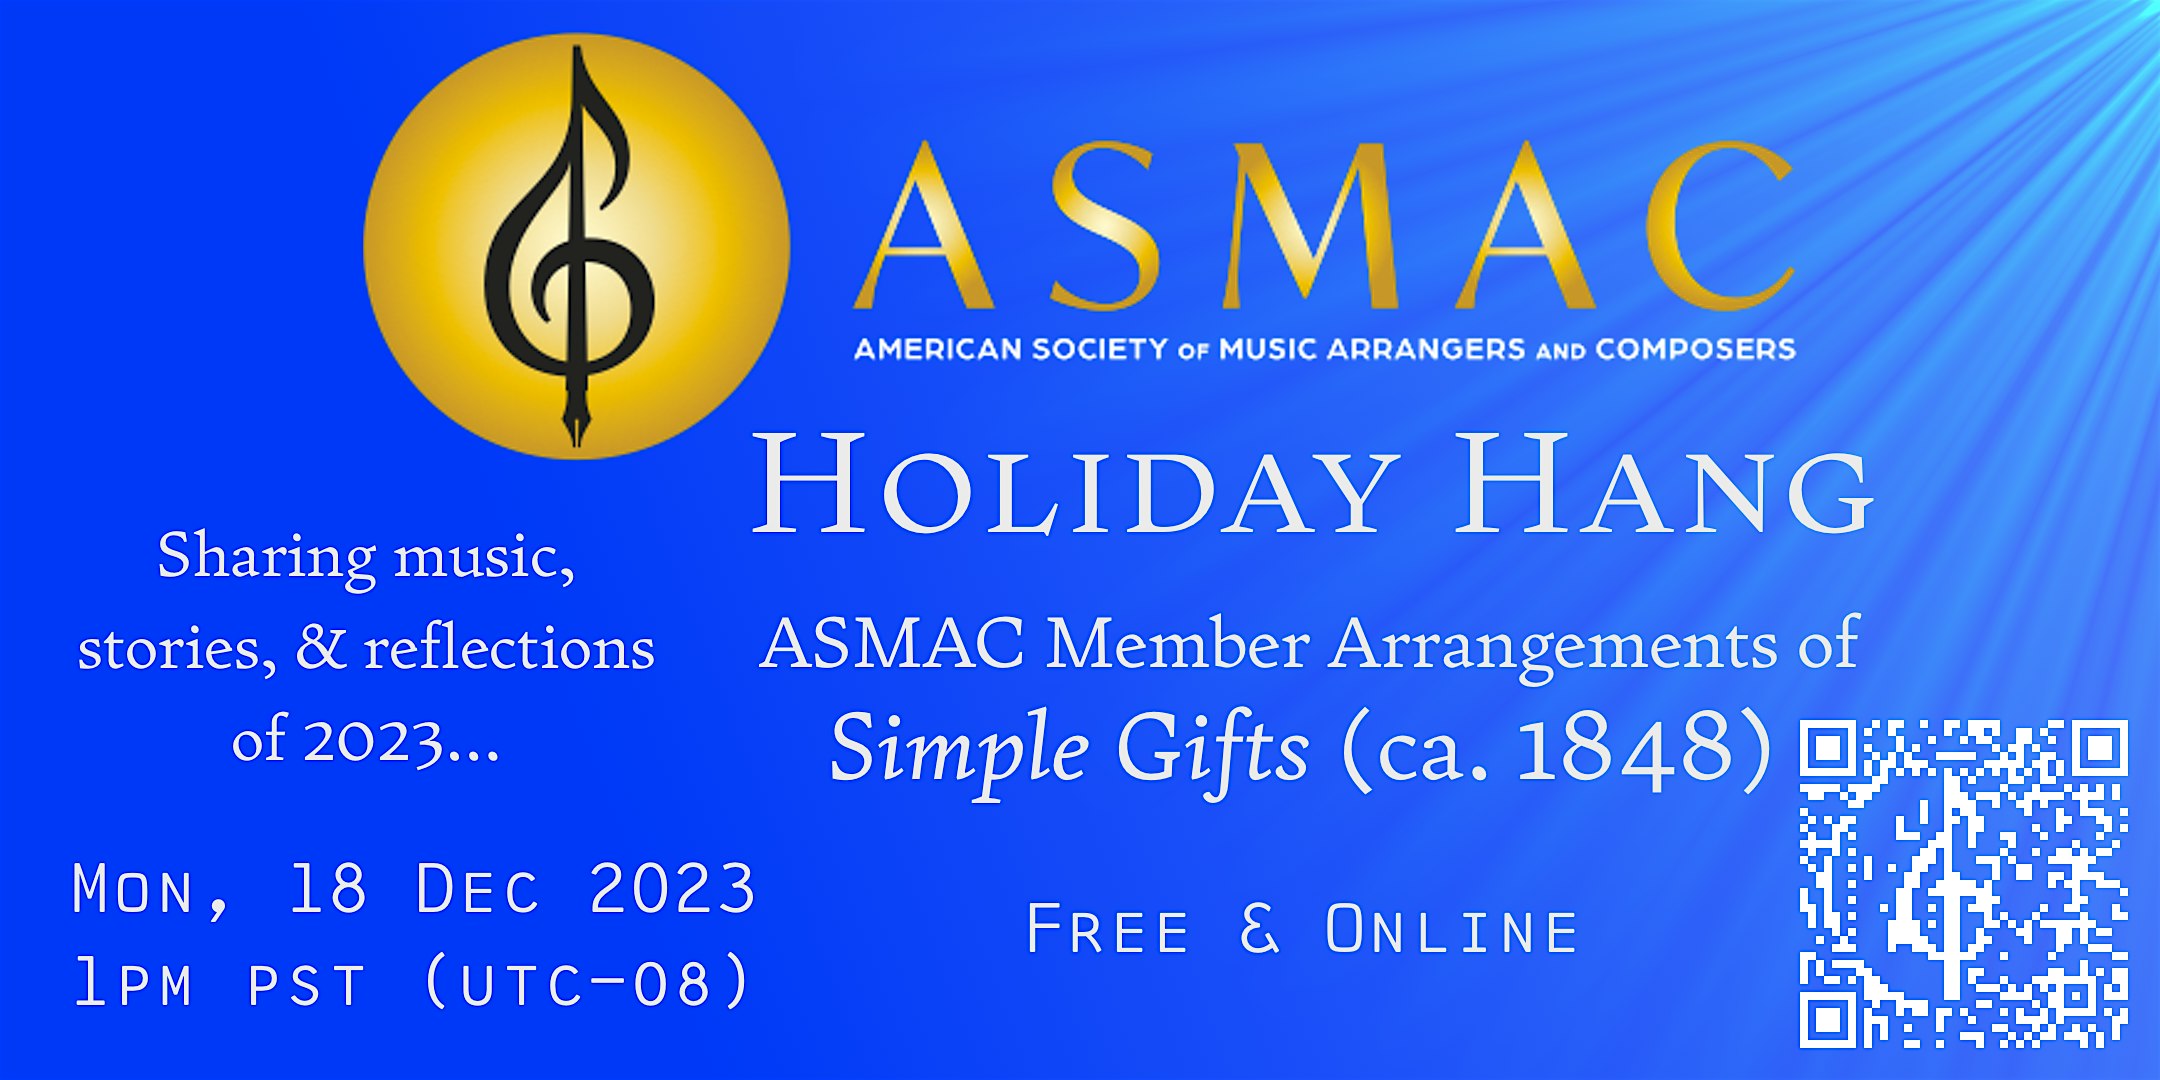 ASMAC Holiday Hang: Simple Gifts